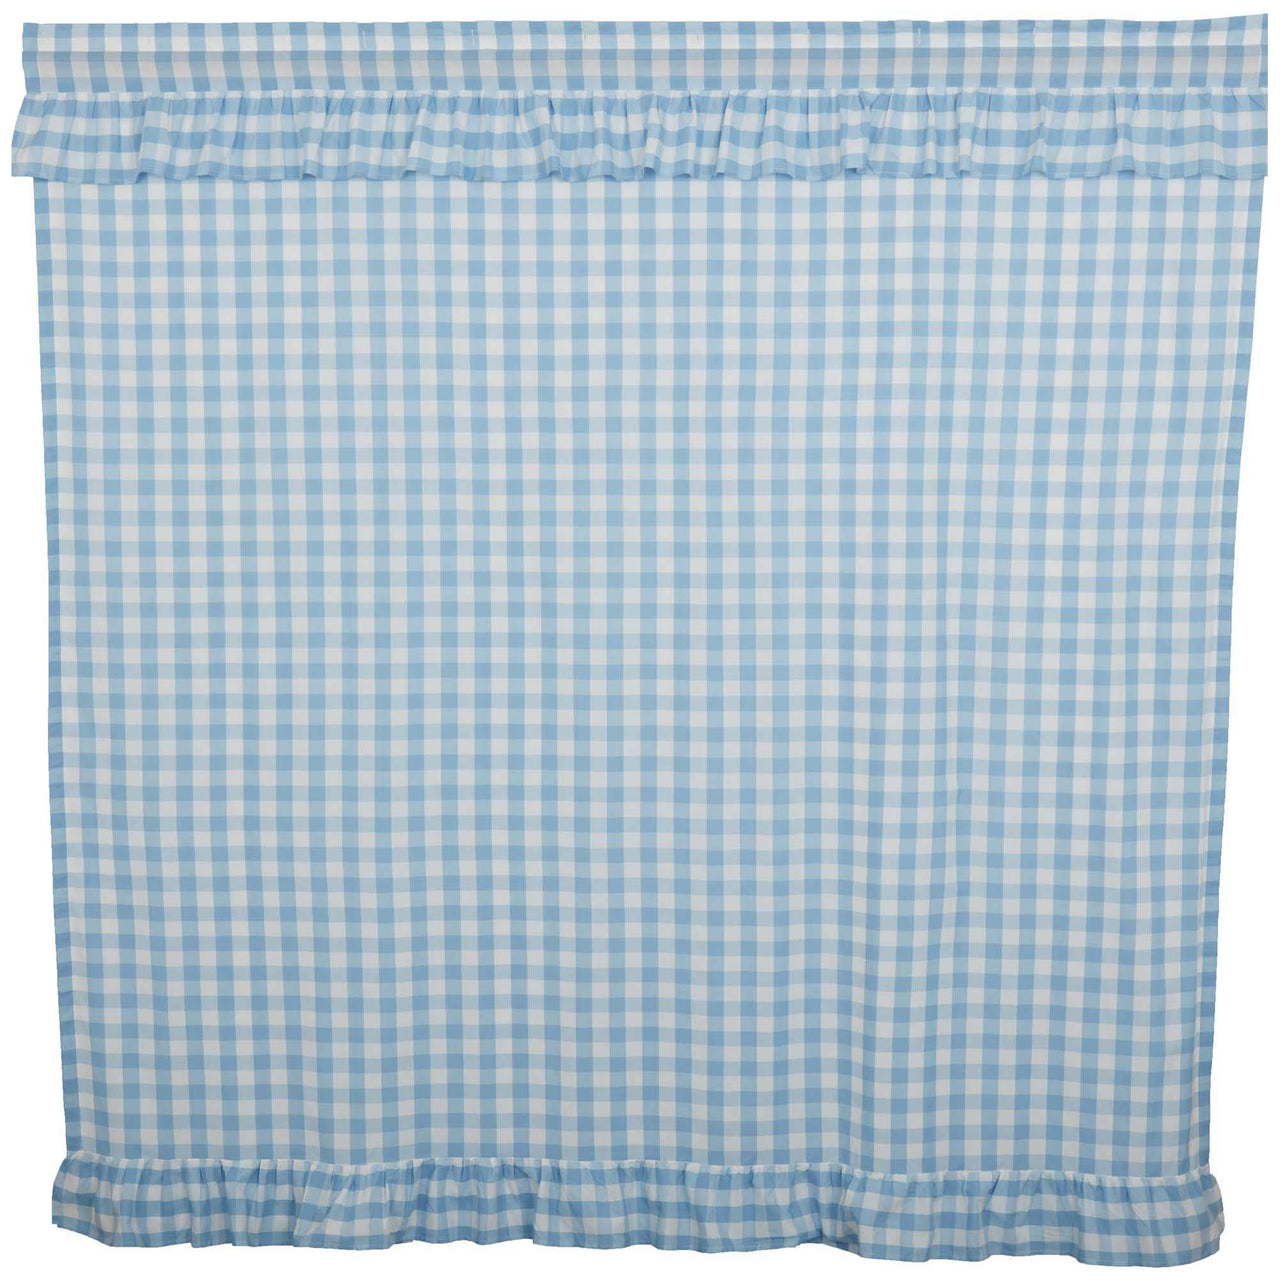 Annie Buffalo Blue Check Ruffled Shower Curtain 72x72 VHC Brands